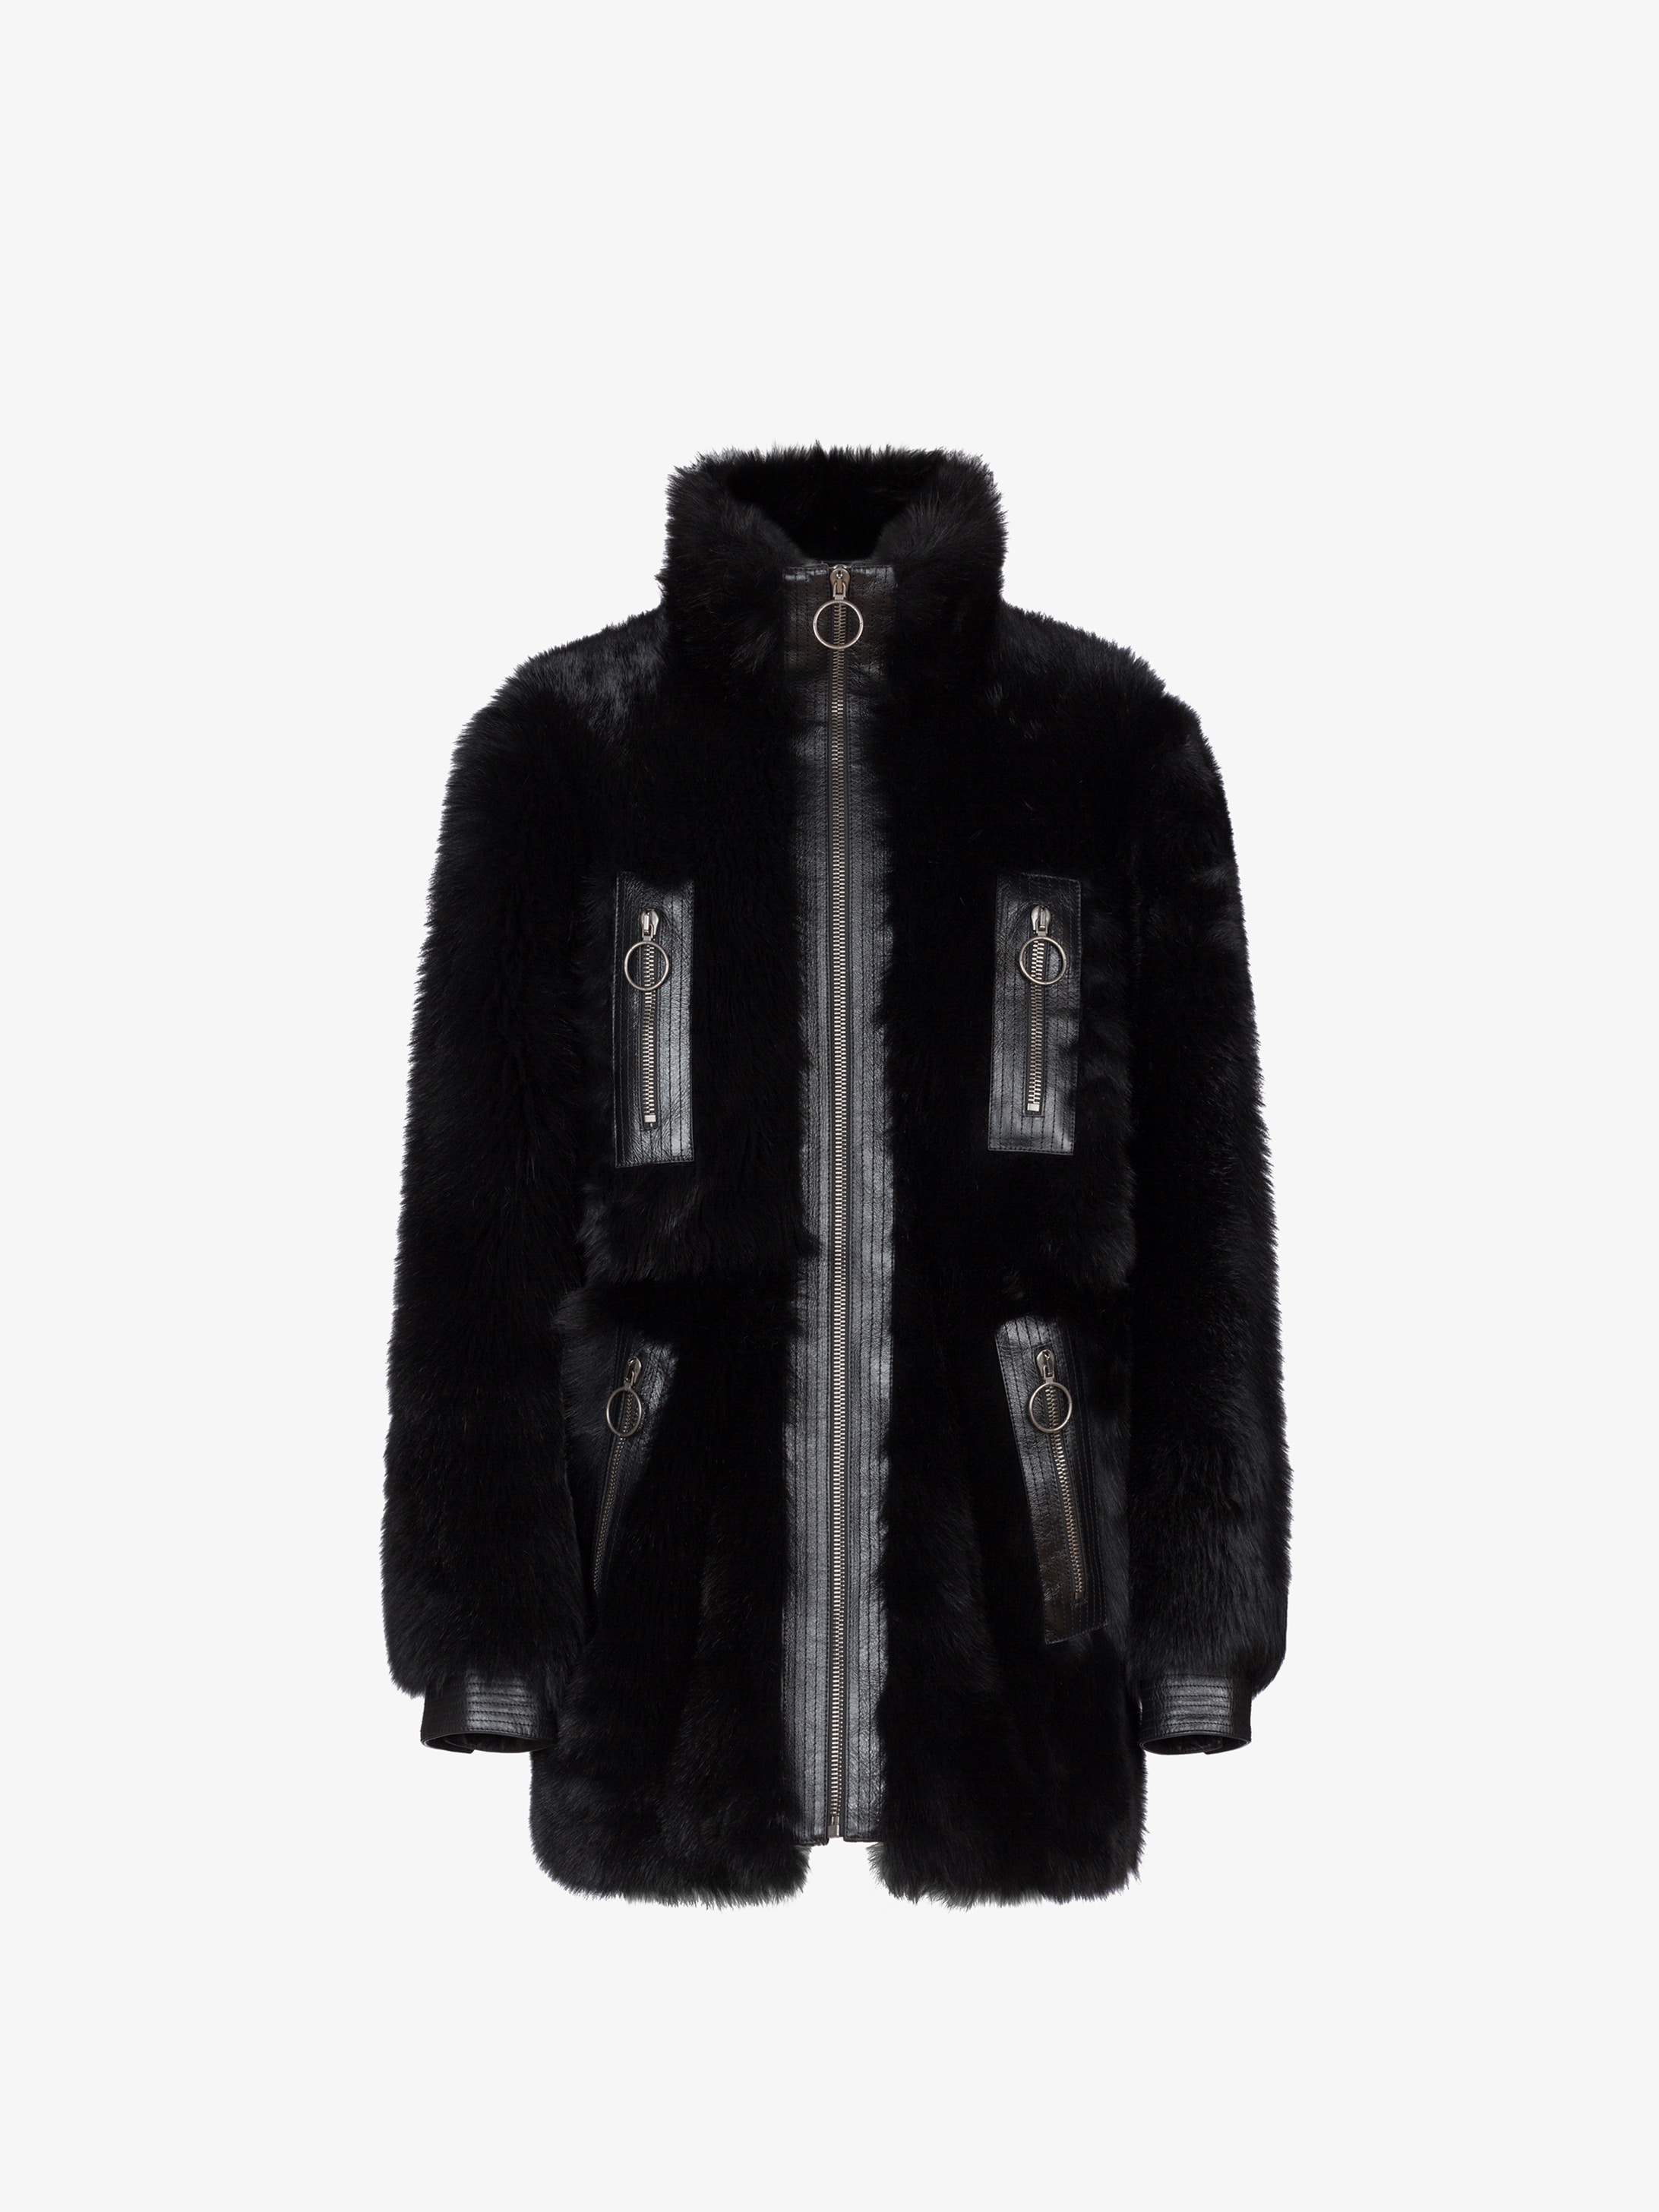 Long shearling jacket | GIVENCHY Paris